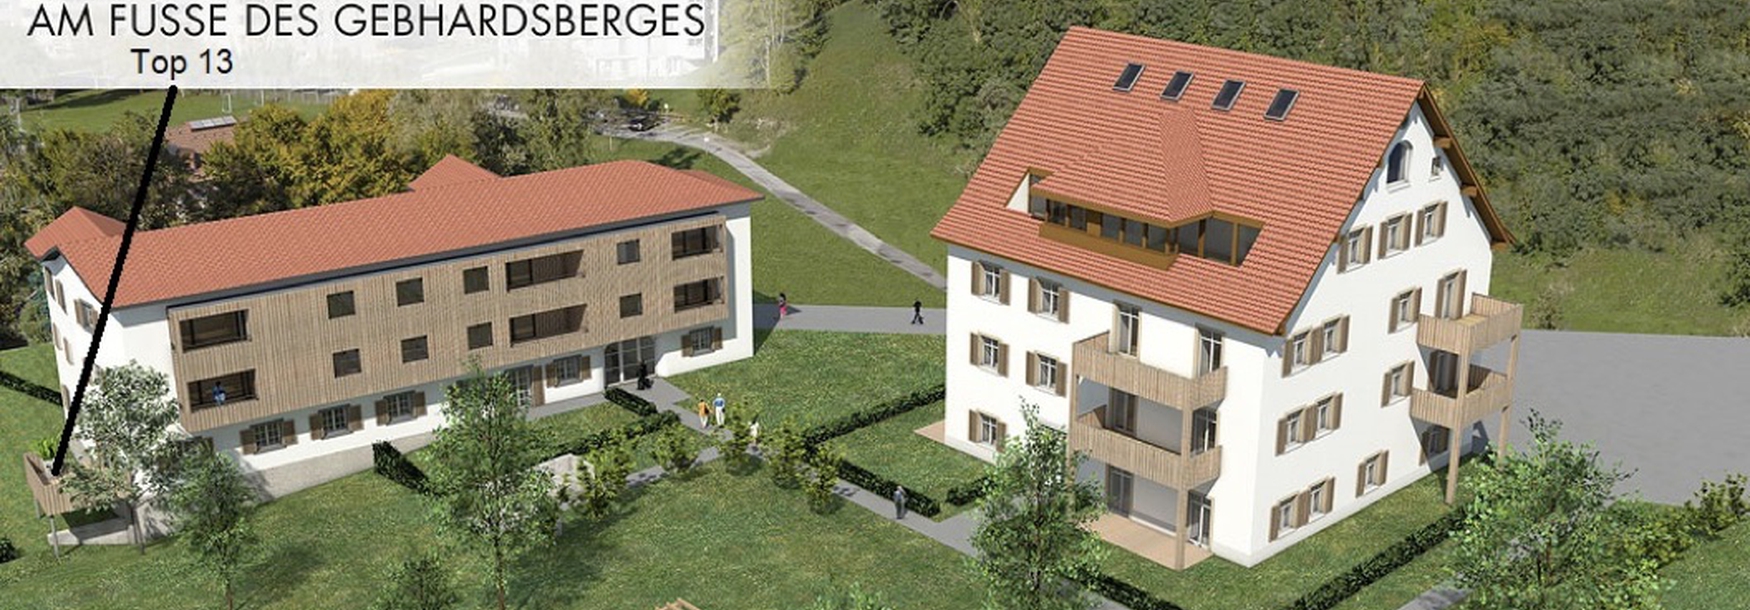 3-Zimmer-Gartenwohnung in guter Lage von Bregenz